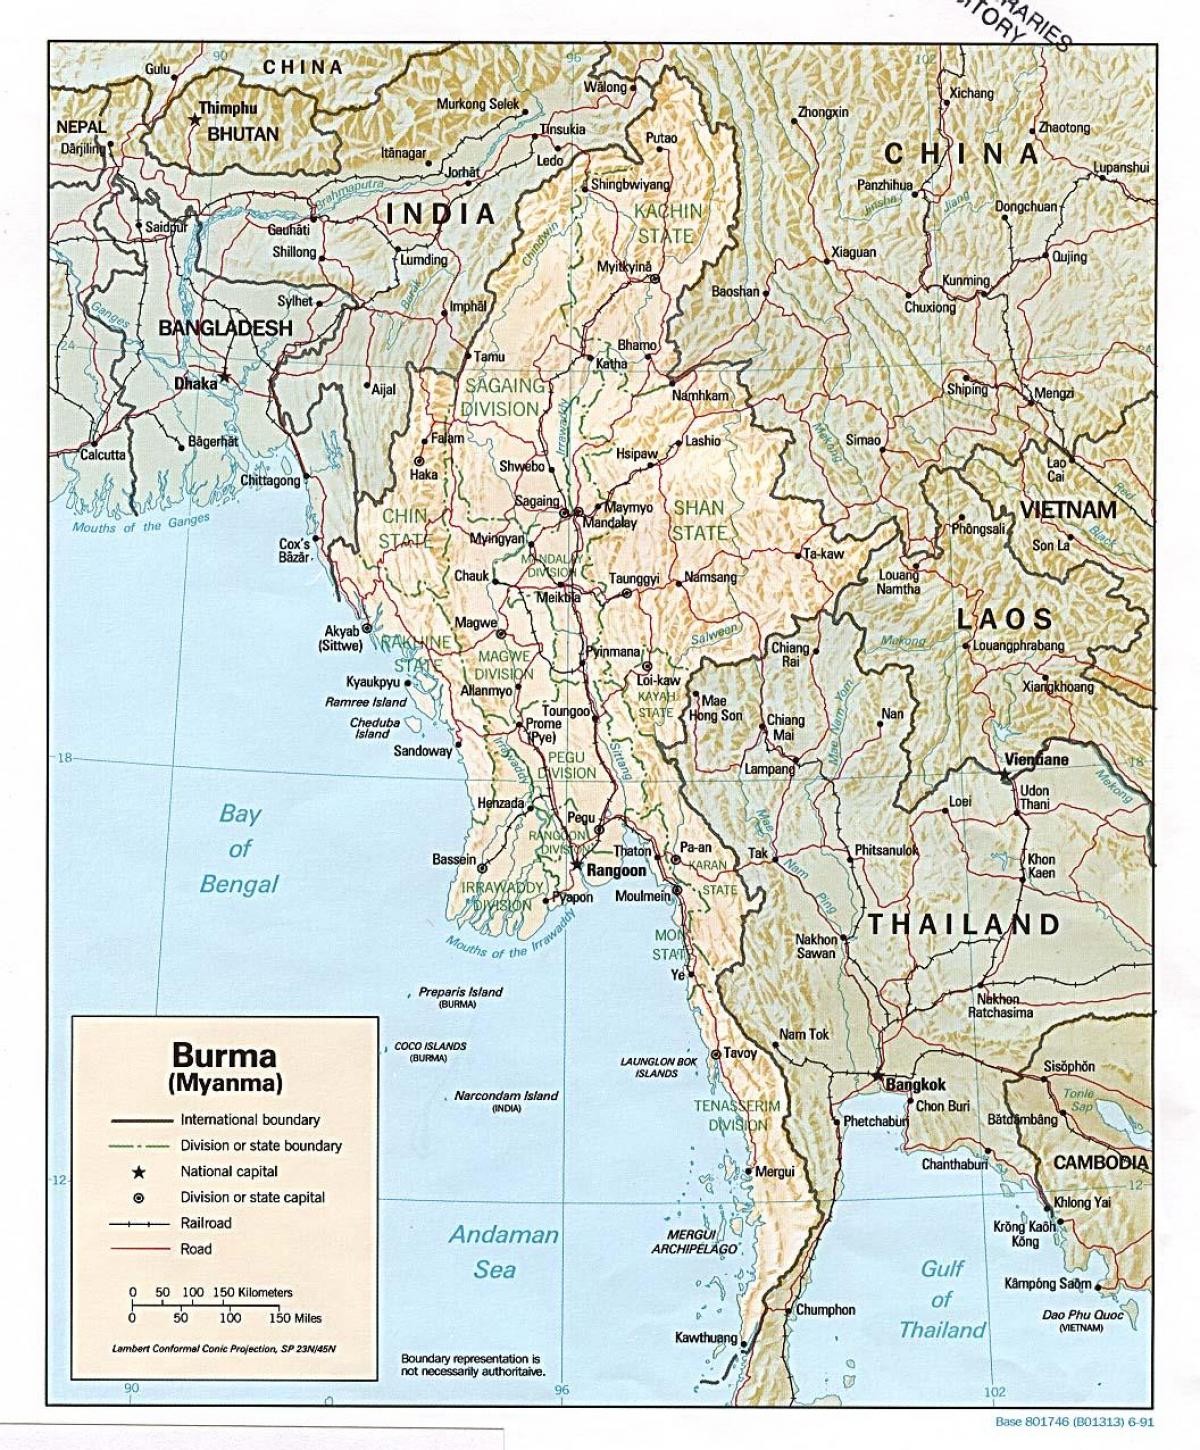 օֆլայն քարտեզ Մյանմա 